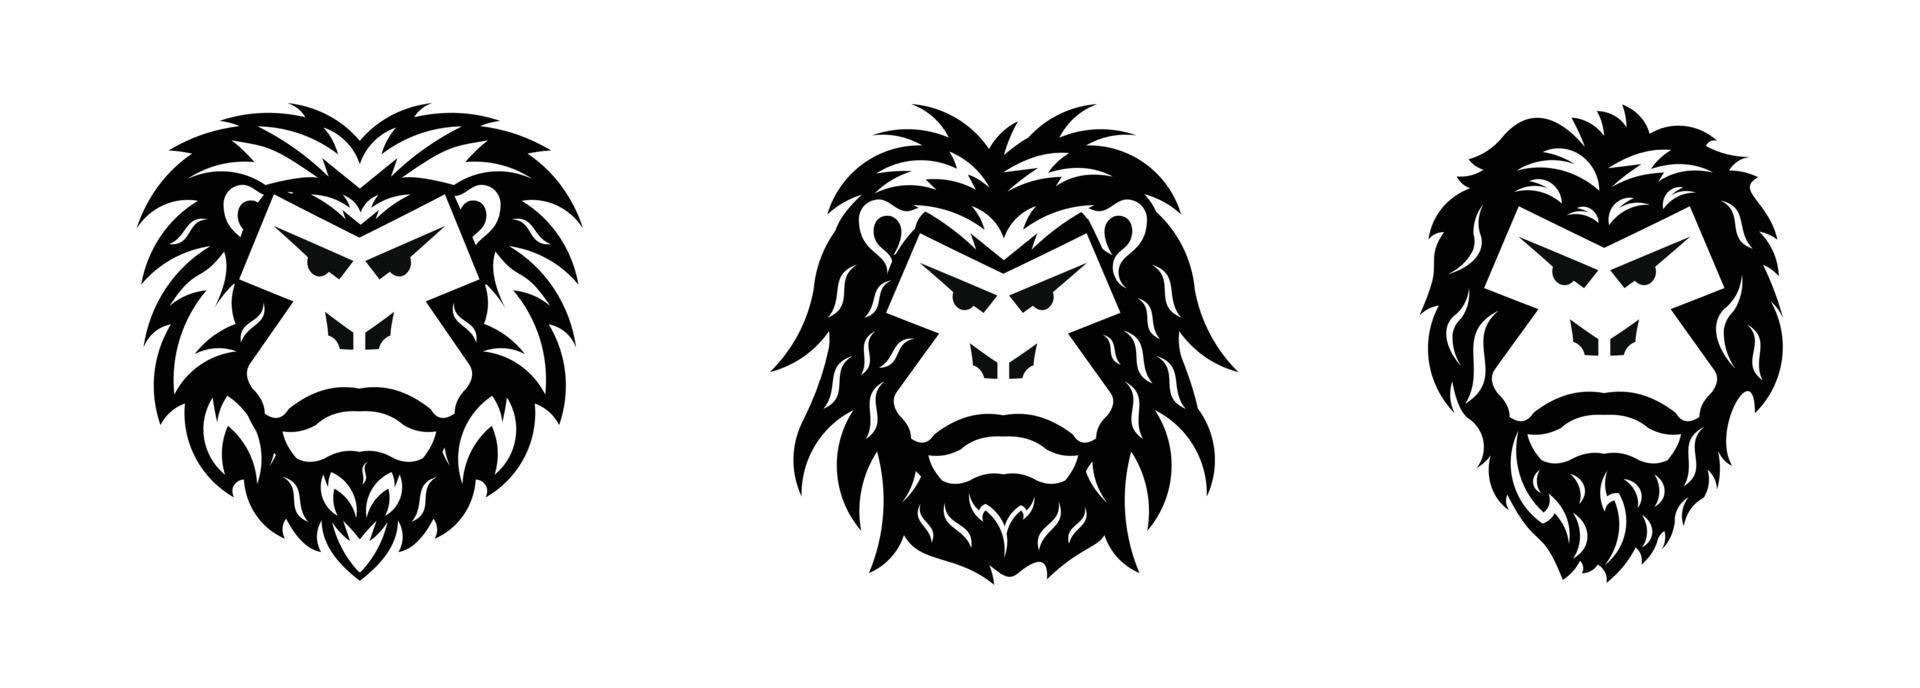 plantilla de logotipo de cabeza de gorila, vector de cabeza de gorila, vector de cabeza de mono, logotipo de cara de mono